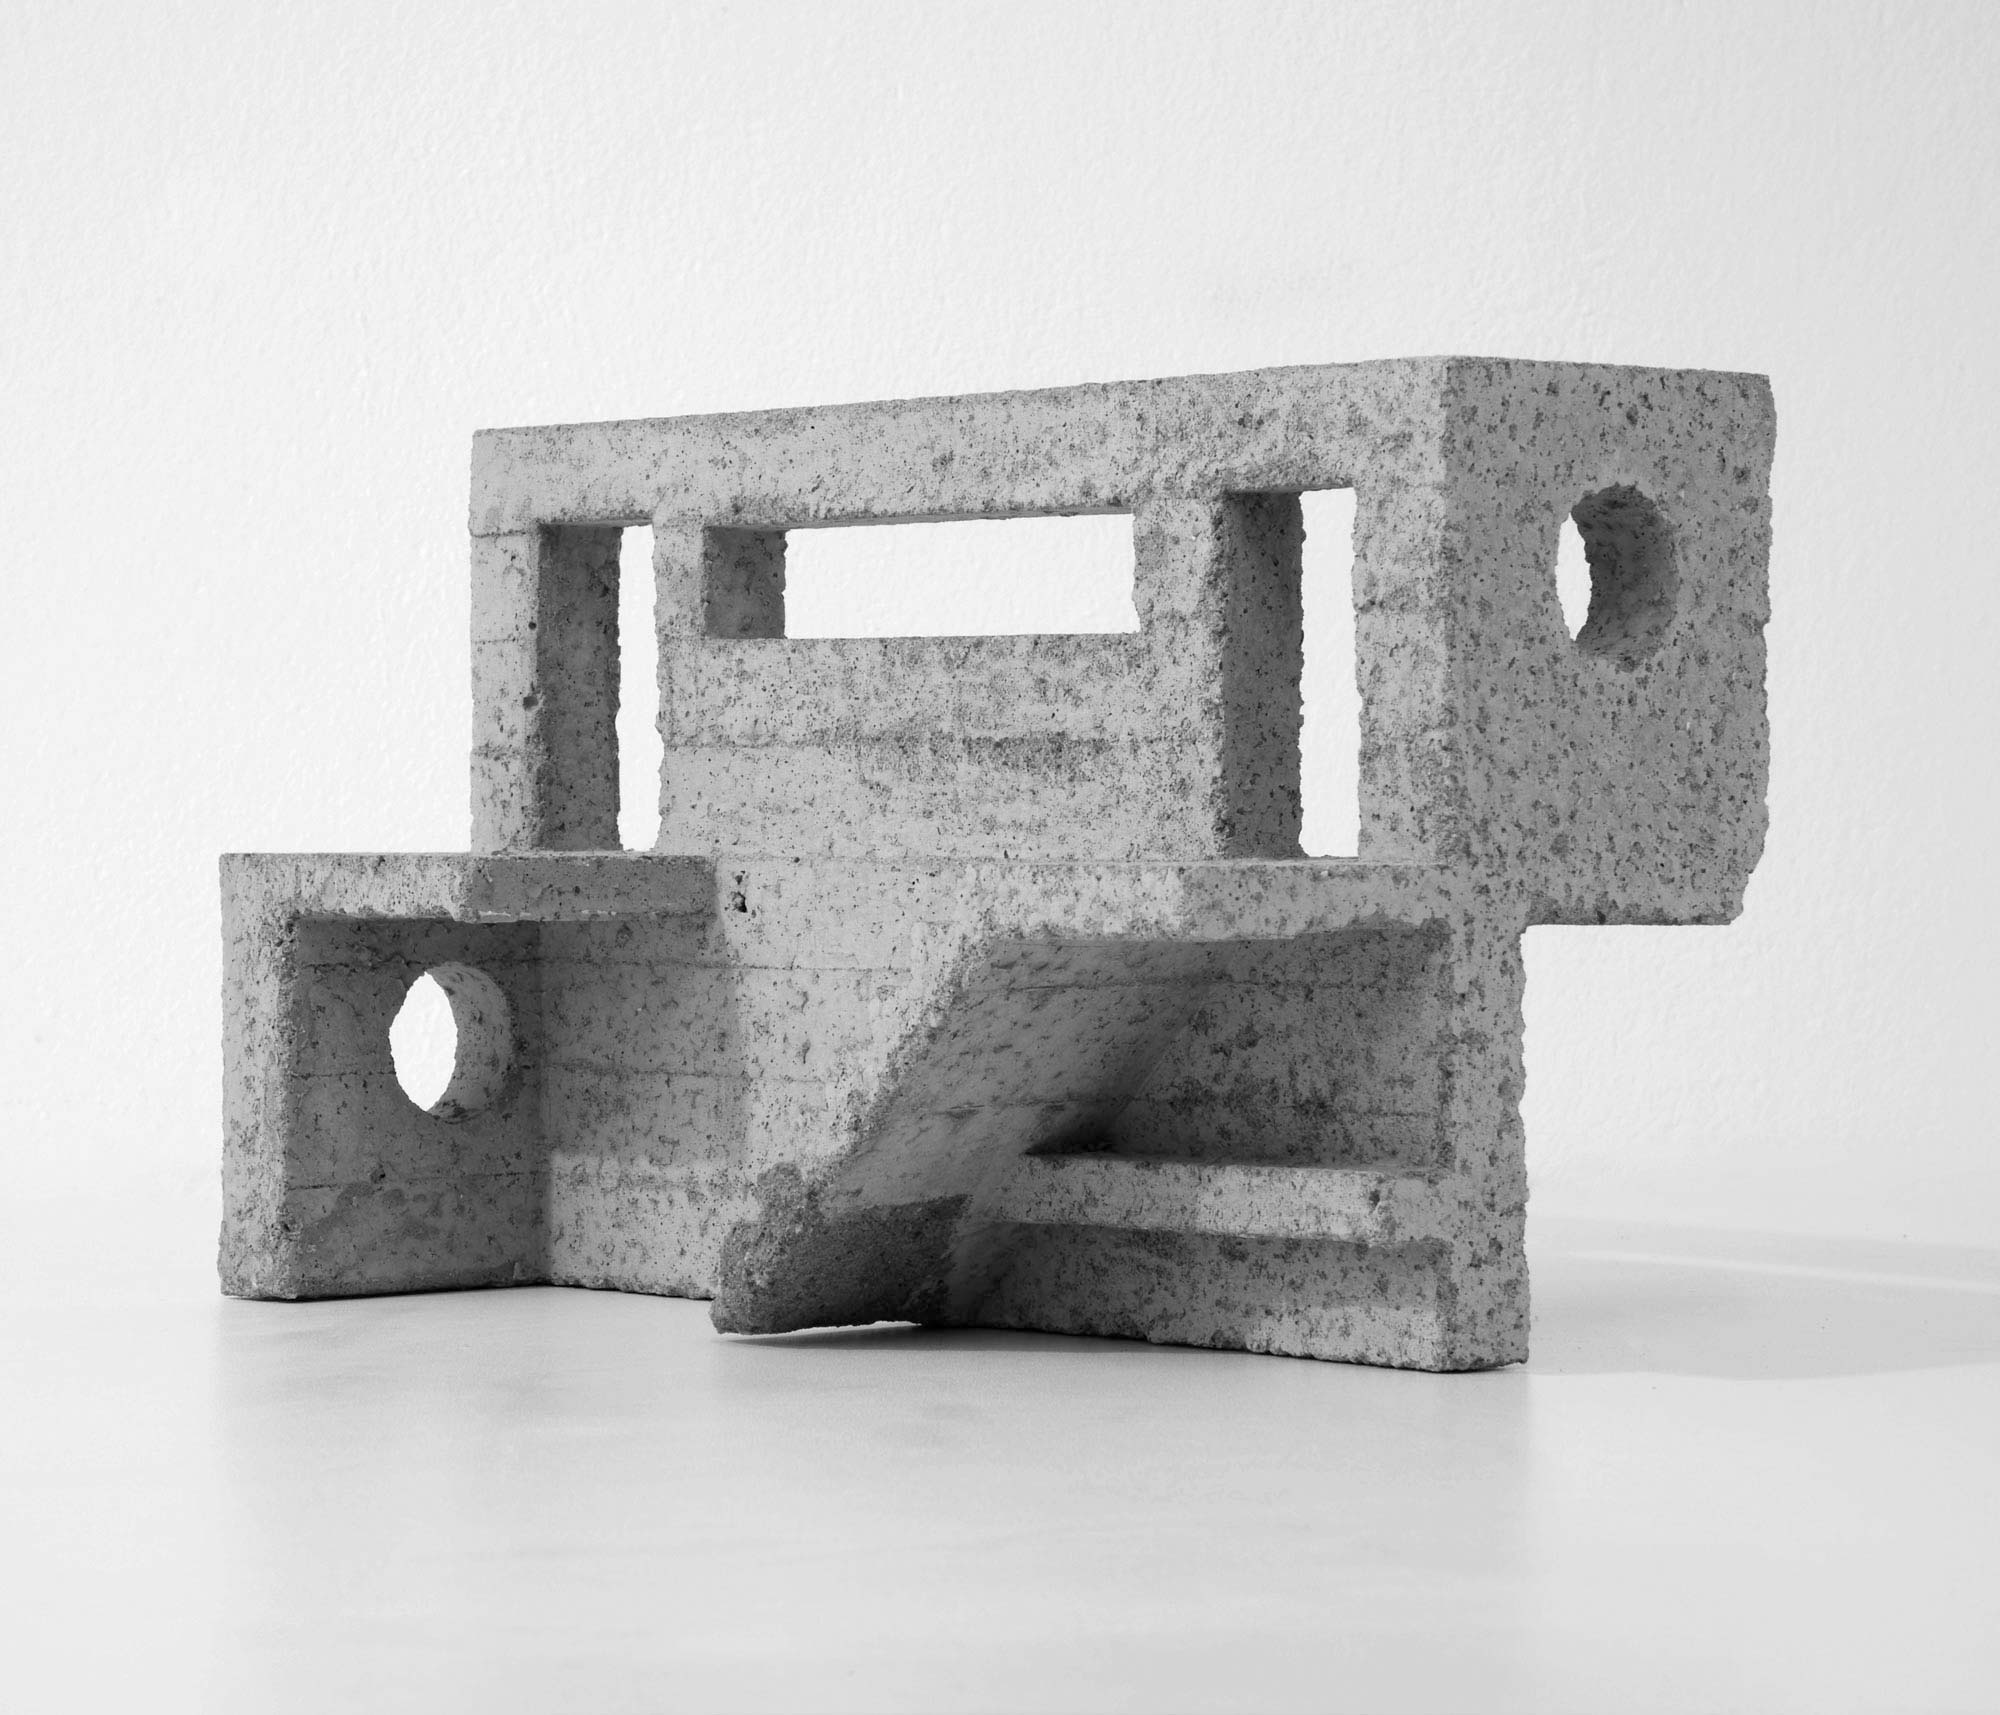 mattia listowski art design objet décoration sculpture béton moulage micro architecture maquette passage 5 édition limitée numérotée signée paris bruxelles 2020